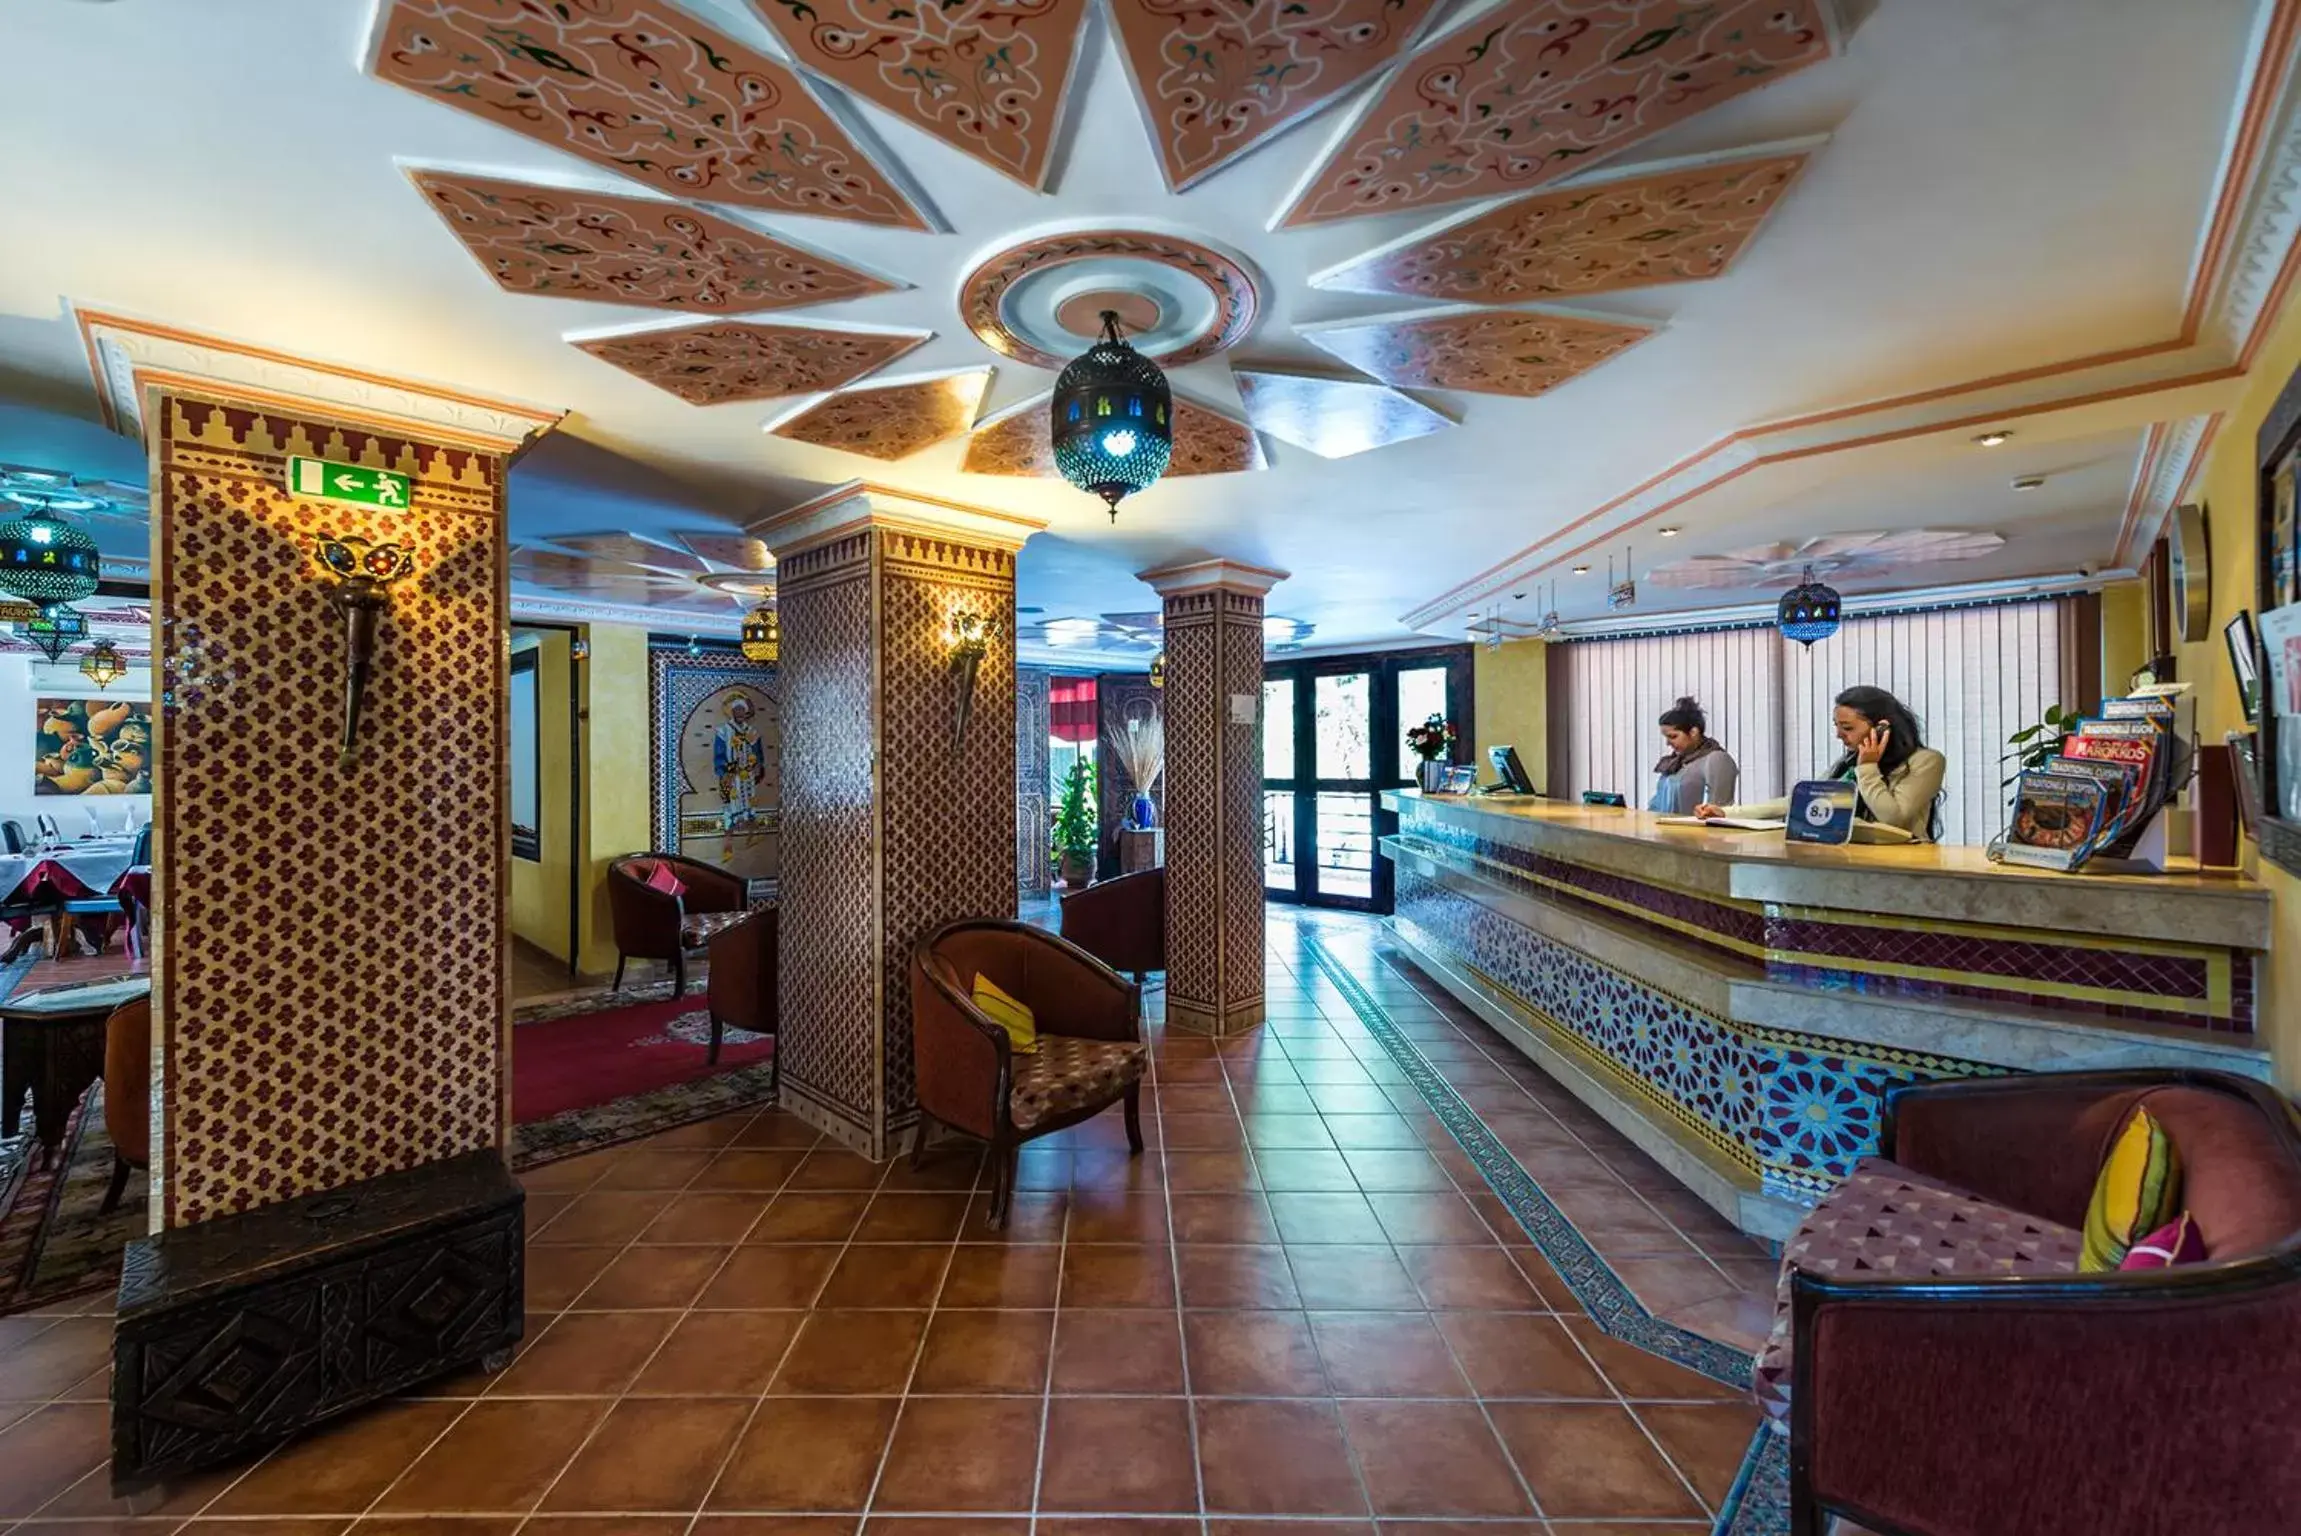 Lobby or reception, Lobby/Reception in Atlantic Hotel Agadir